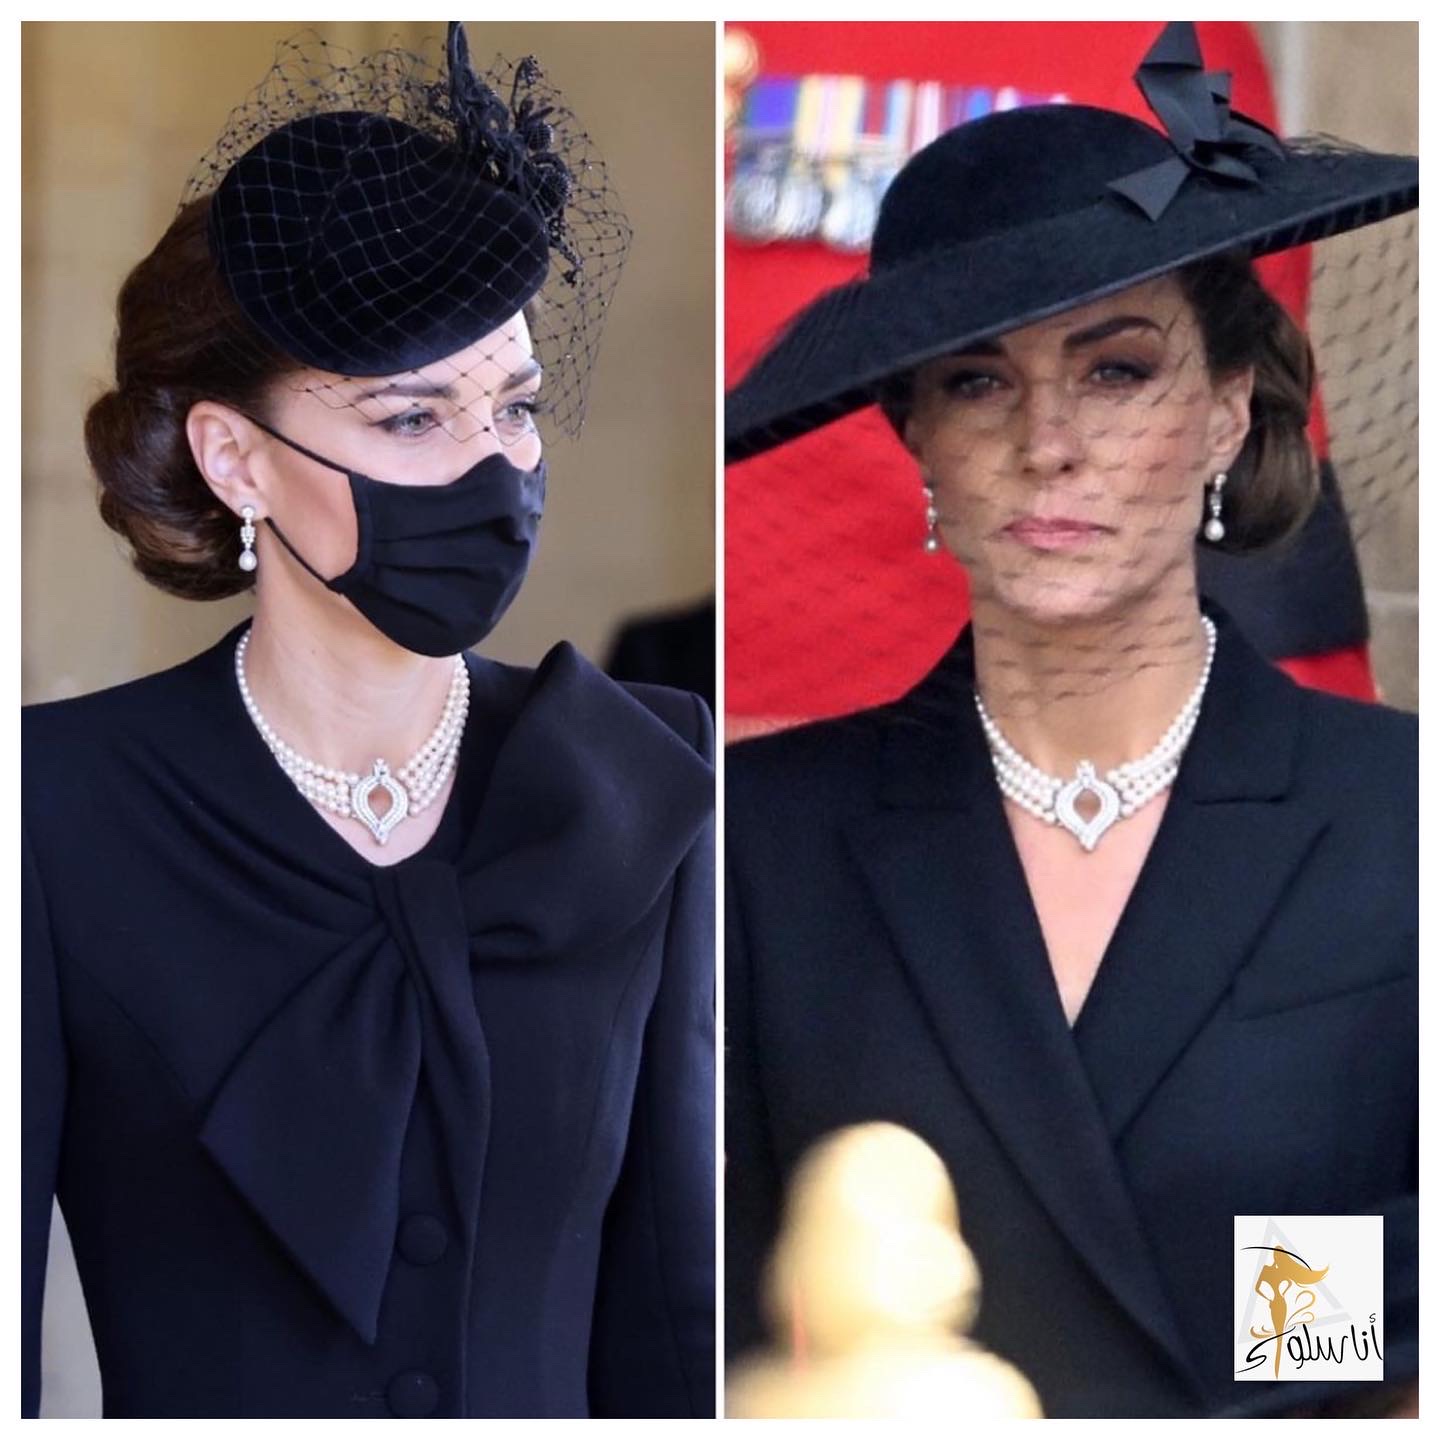 بعد عام واحد من جنازة الأمير فيليب كيت ترتدي العقد نفسه 